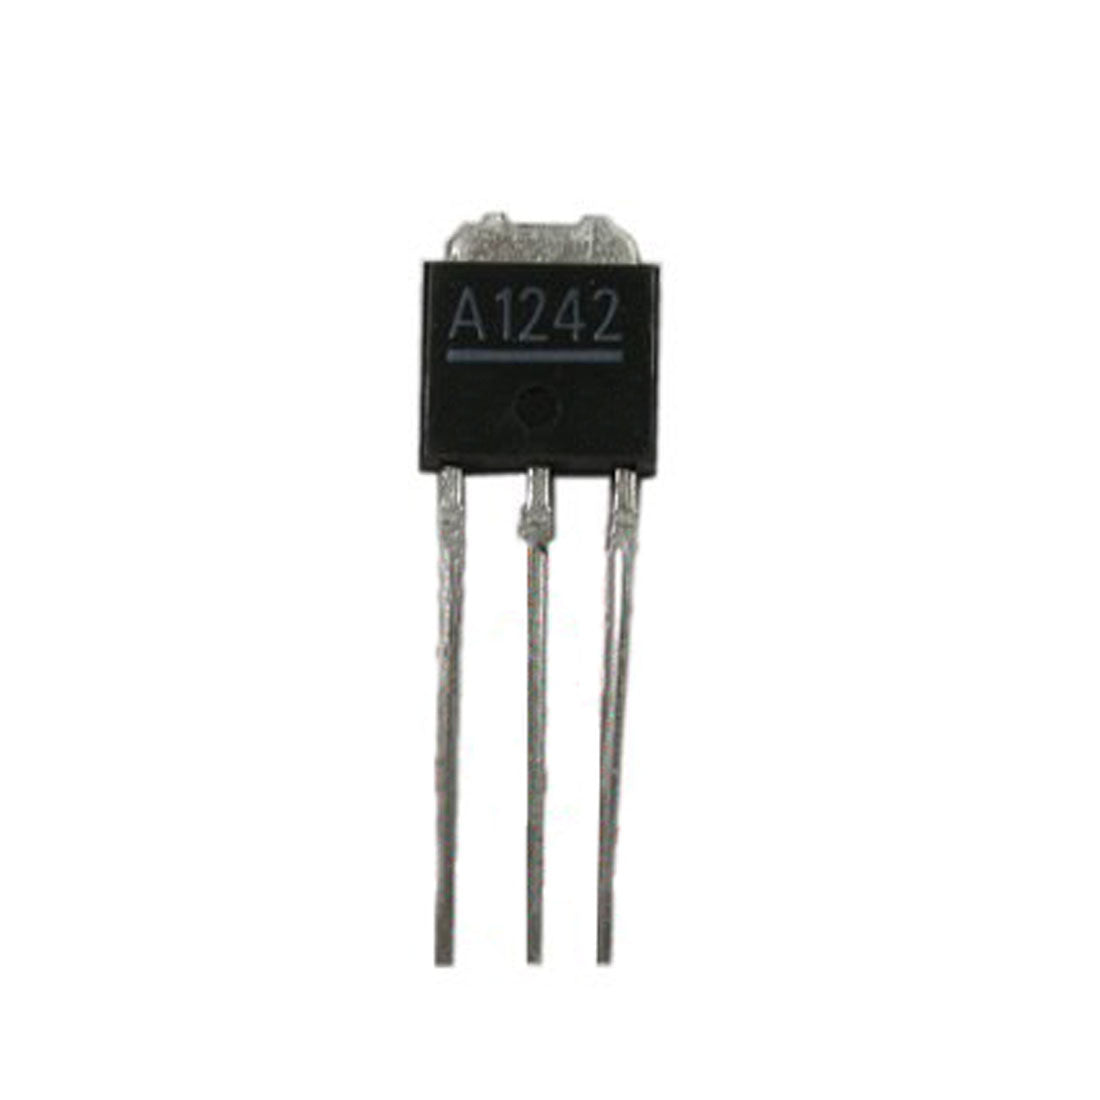 A1242 Componente elettronico, circuito integrato, transistor, 3 contatti